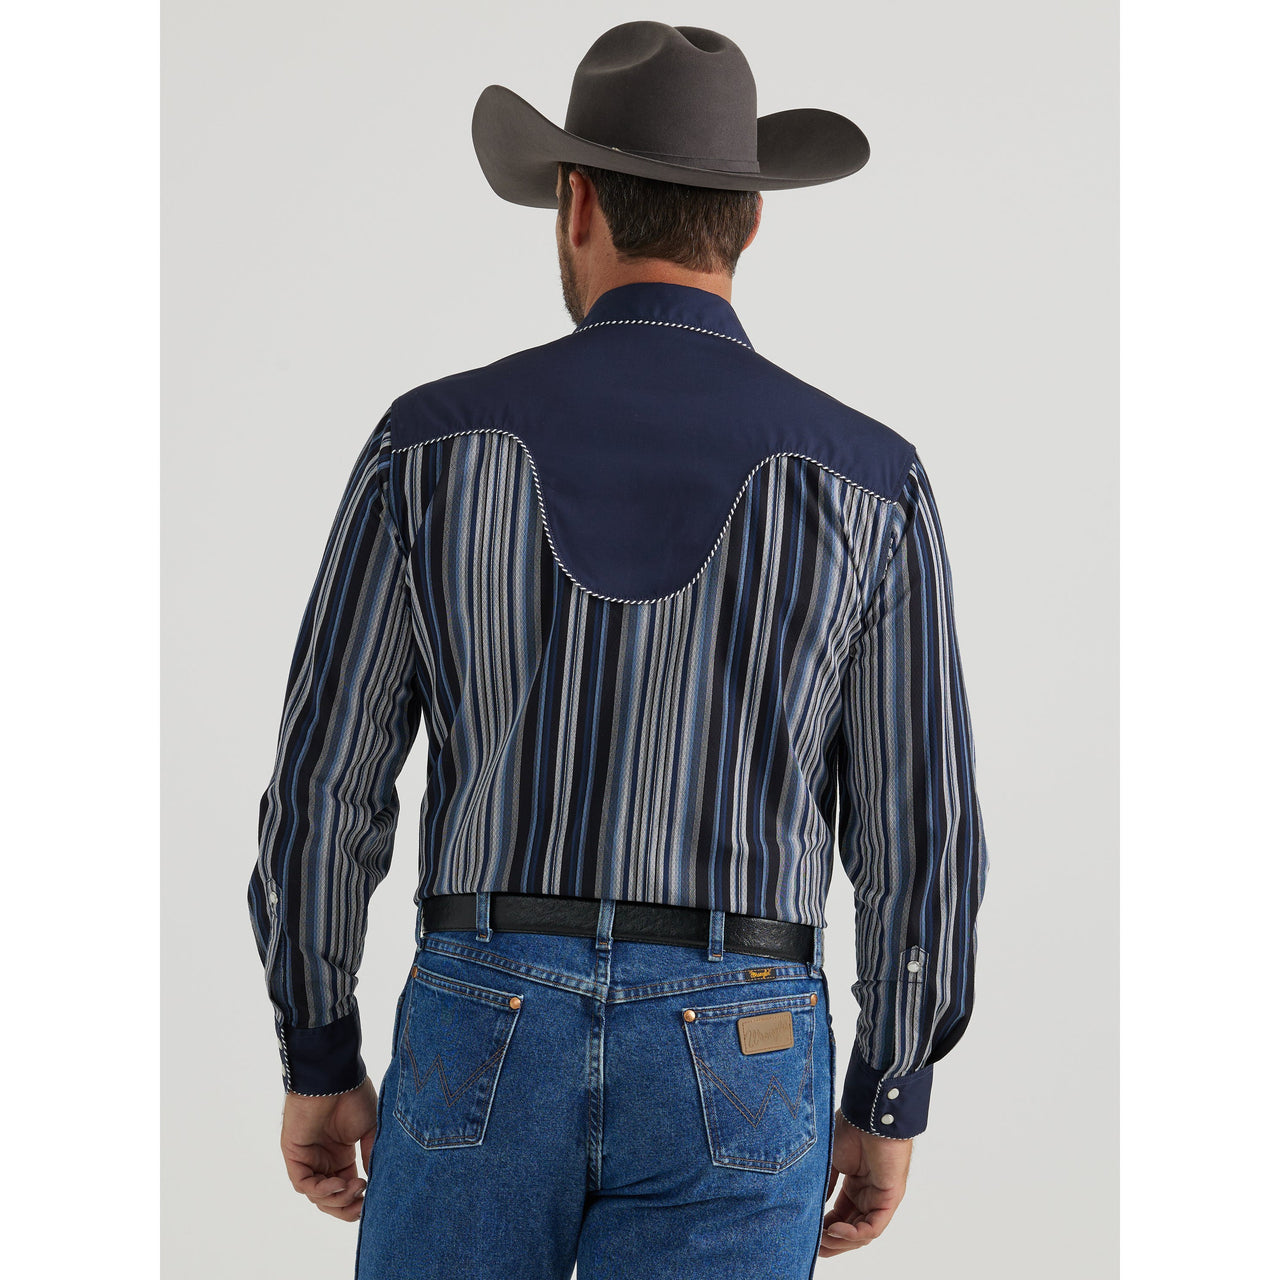 Wrangler Women's Rodeo Ben Long Sleeve Shirt - Navy Blue